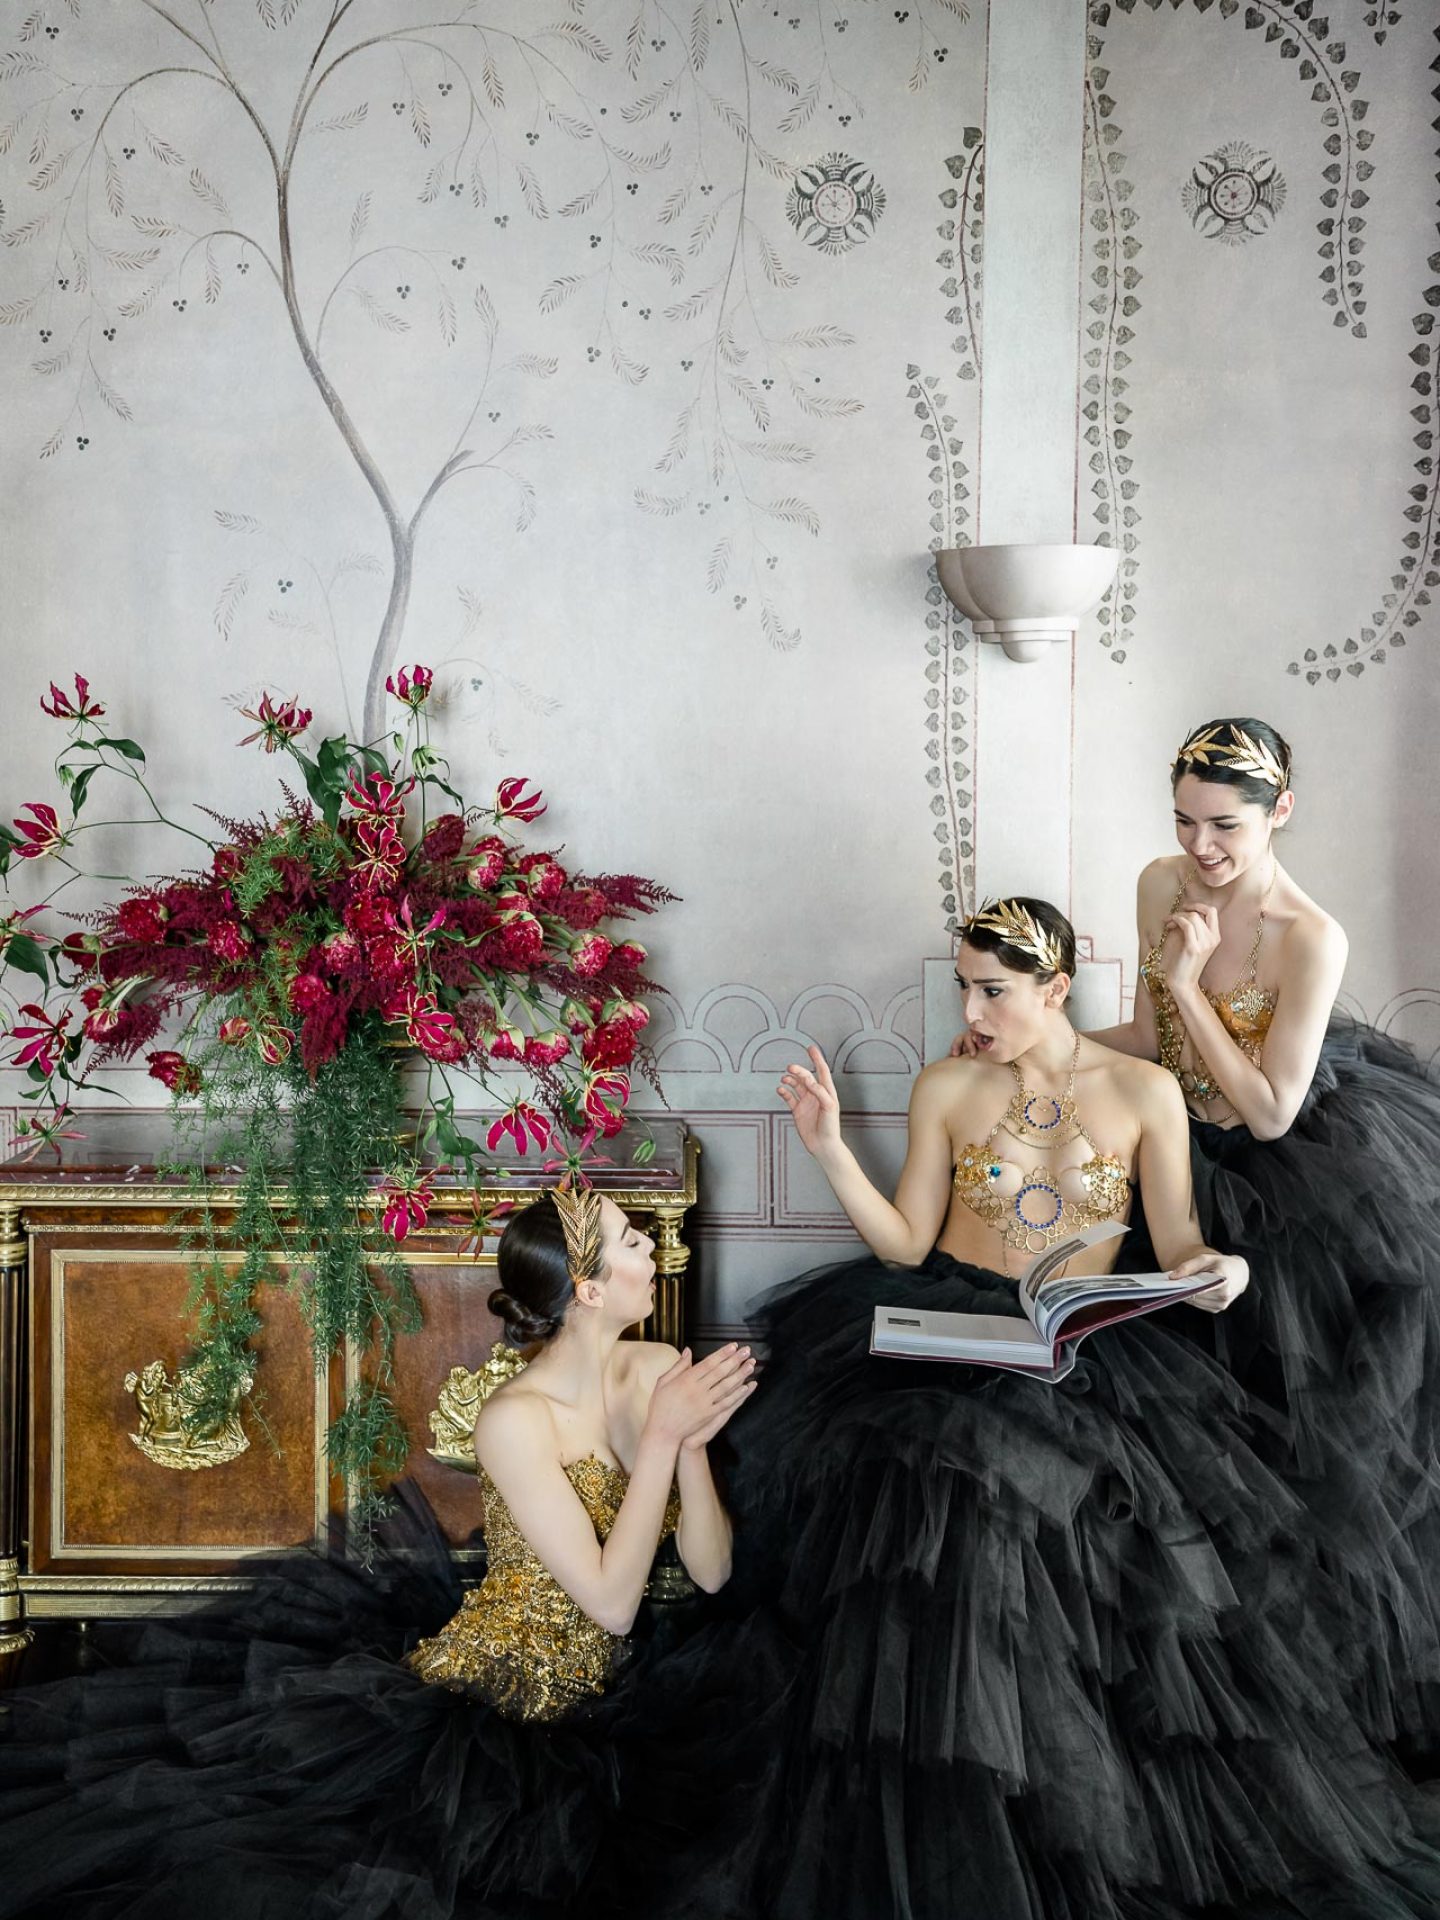 Villa Astor - Ballerinas photography